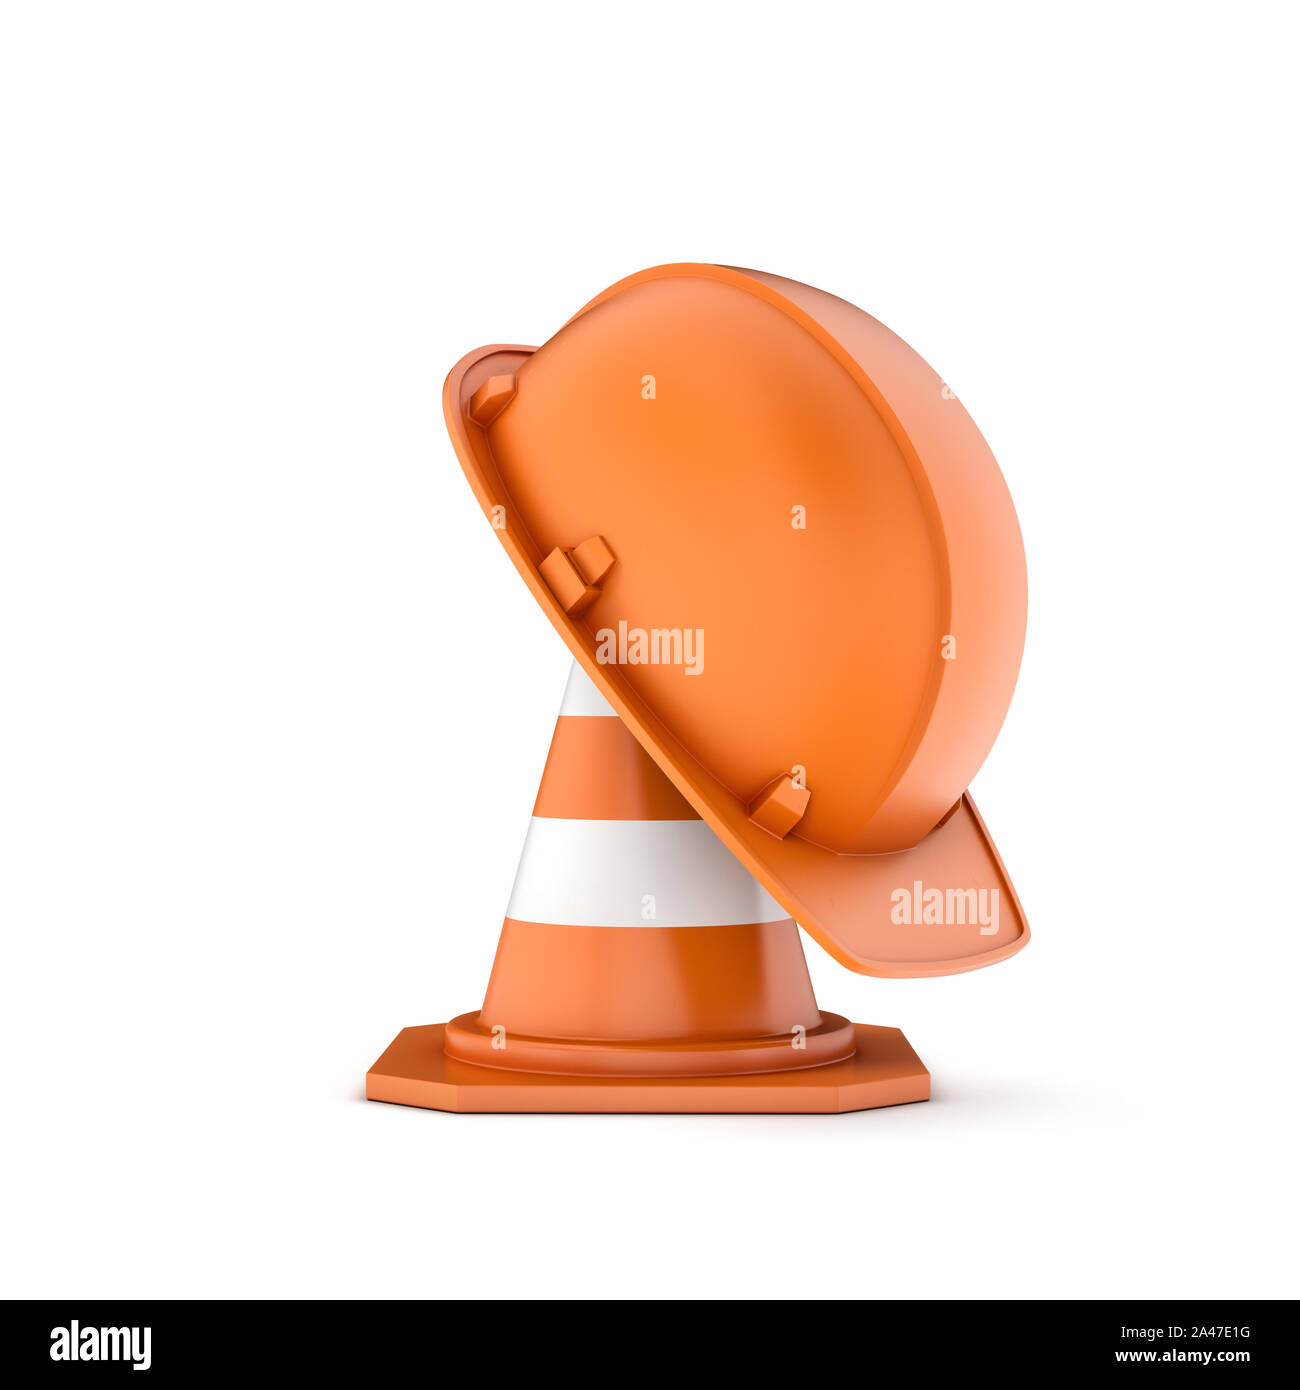 Rào chắn giao thông màu cam là một vật dụng thiết yếu để giữ an toàn cho người tham gia giao thông. Hãy xem hình ảnh để biết thêm tác dụng của rào chắn này trên đường.